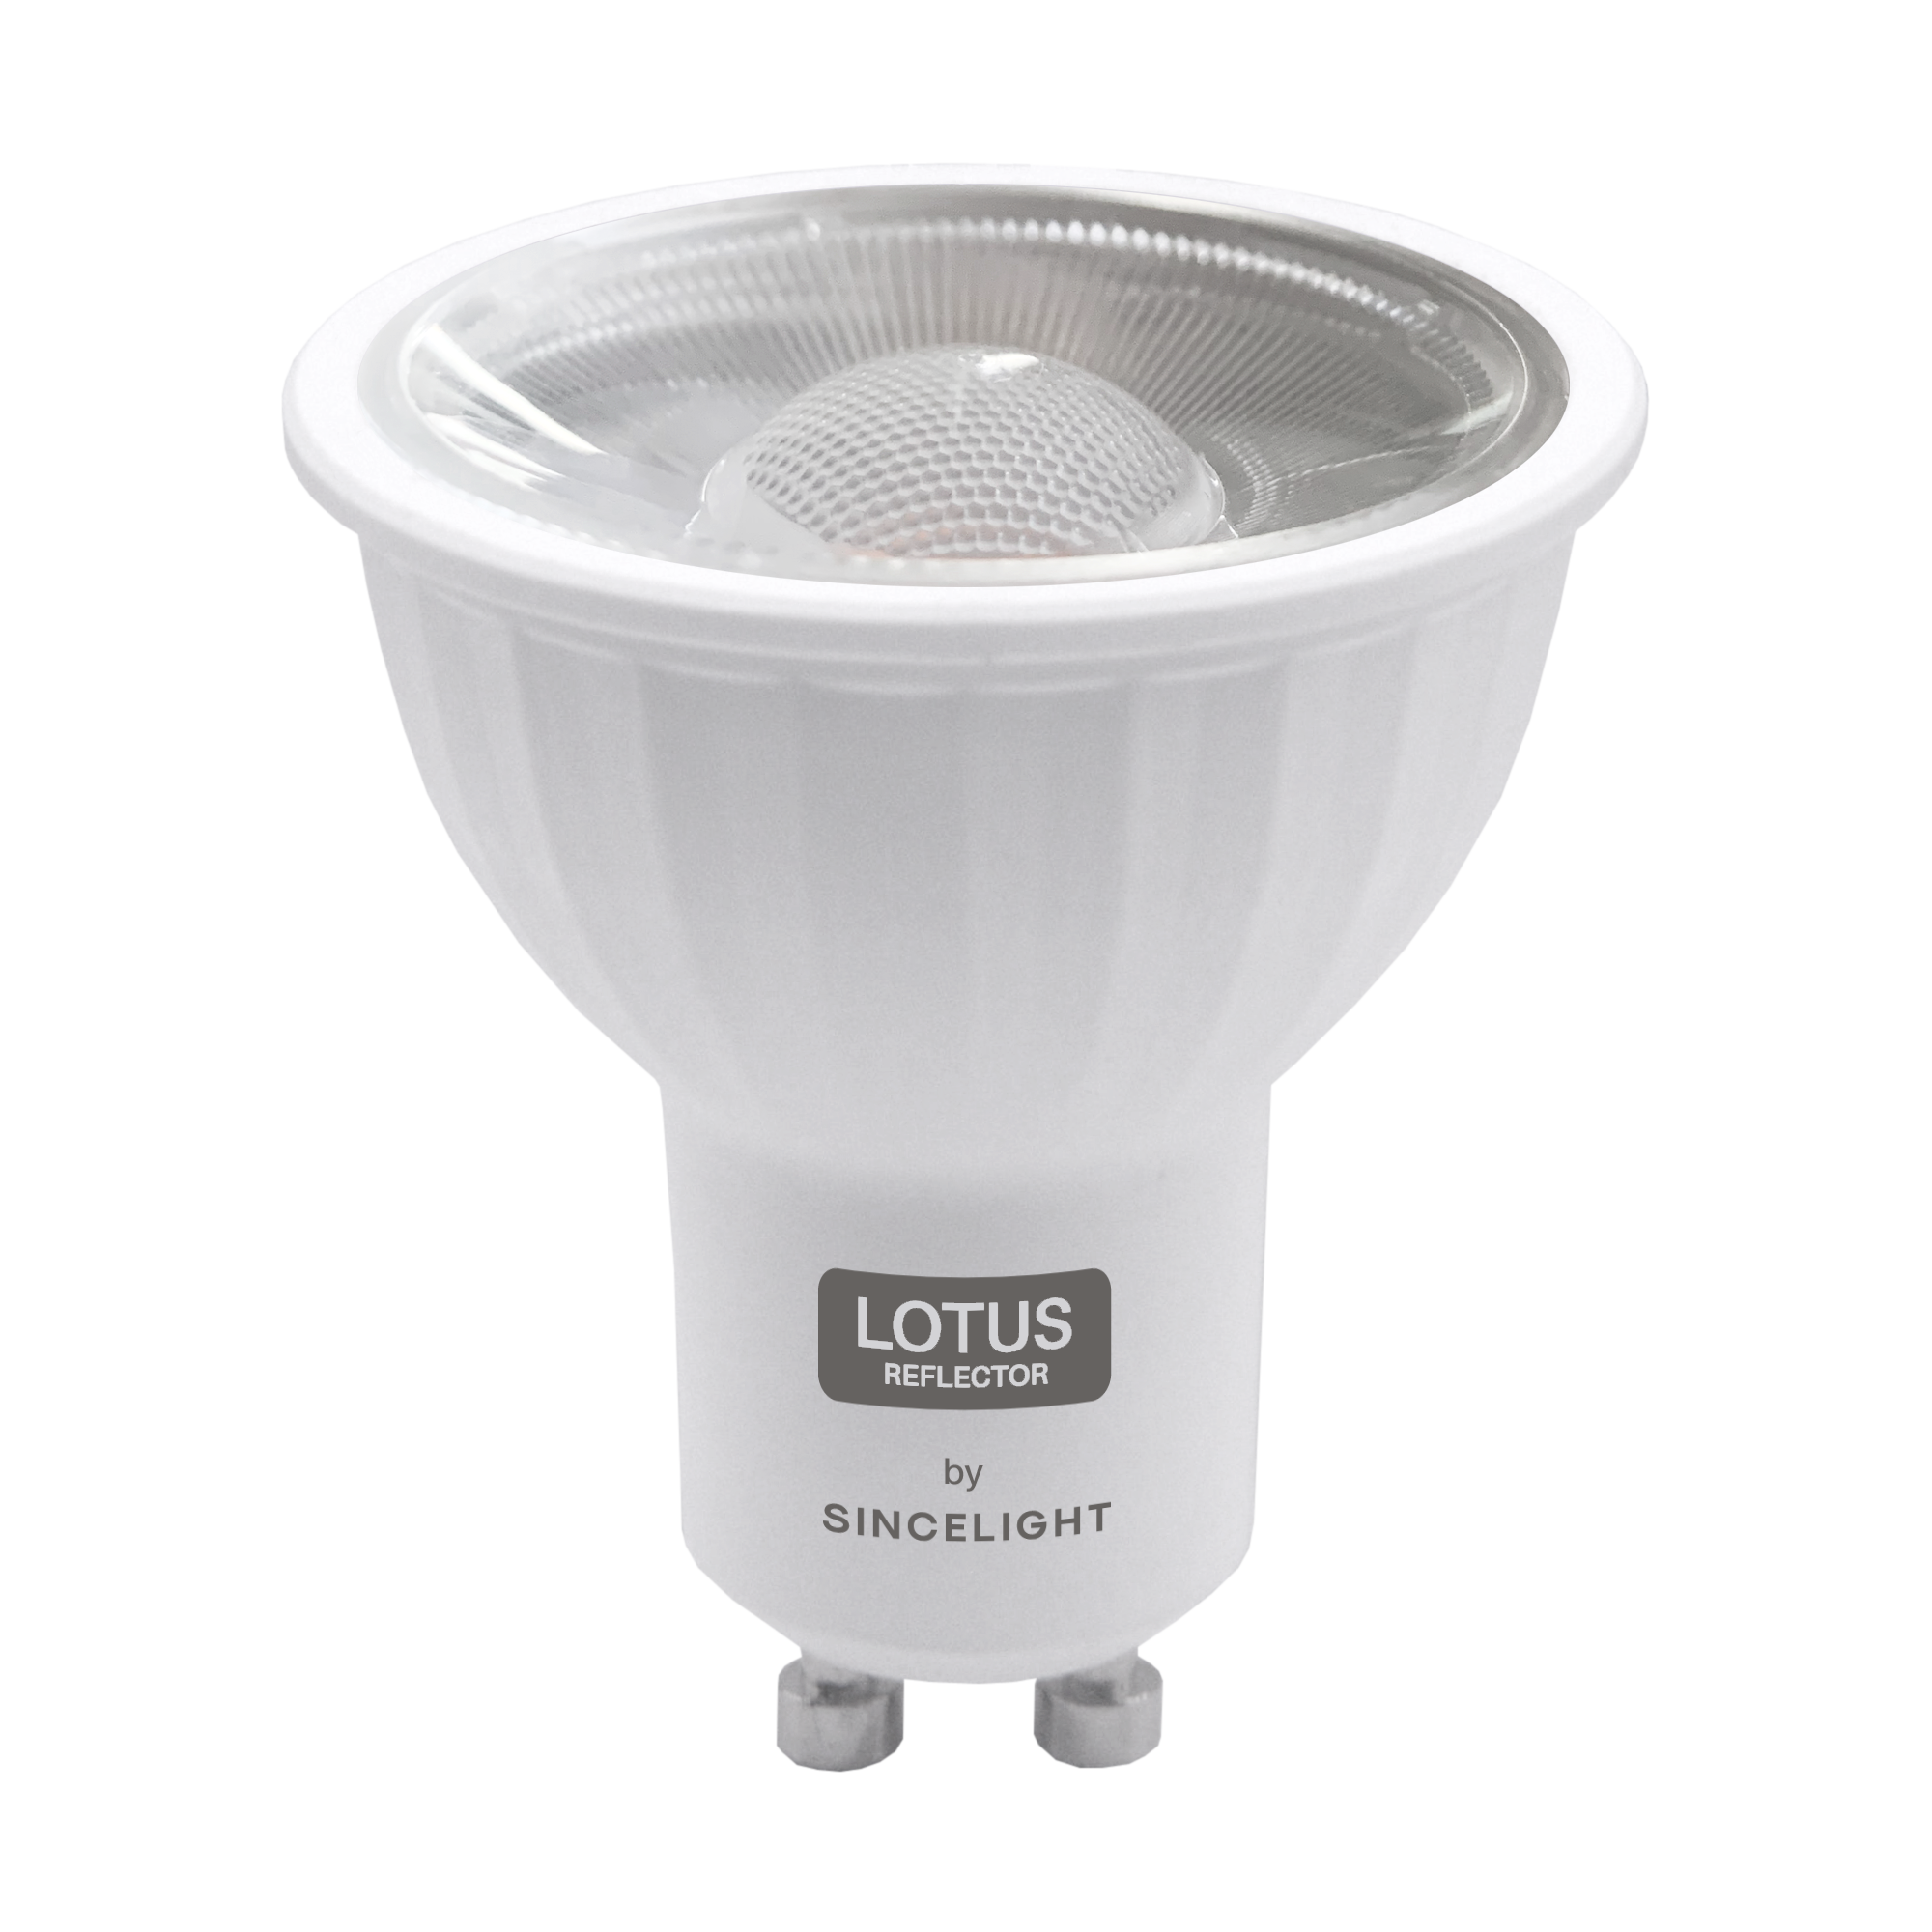 6Pcs 12Pcs Gu10 LED Downlights Bulb Lamp 6W 100-240V 2700 4000 6000K(PAR16/100° Beam Angle/RA≈92/Spot Light) For Home Decor